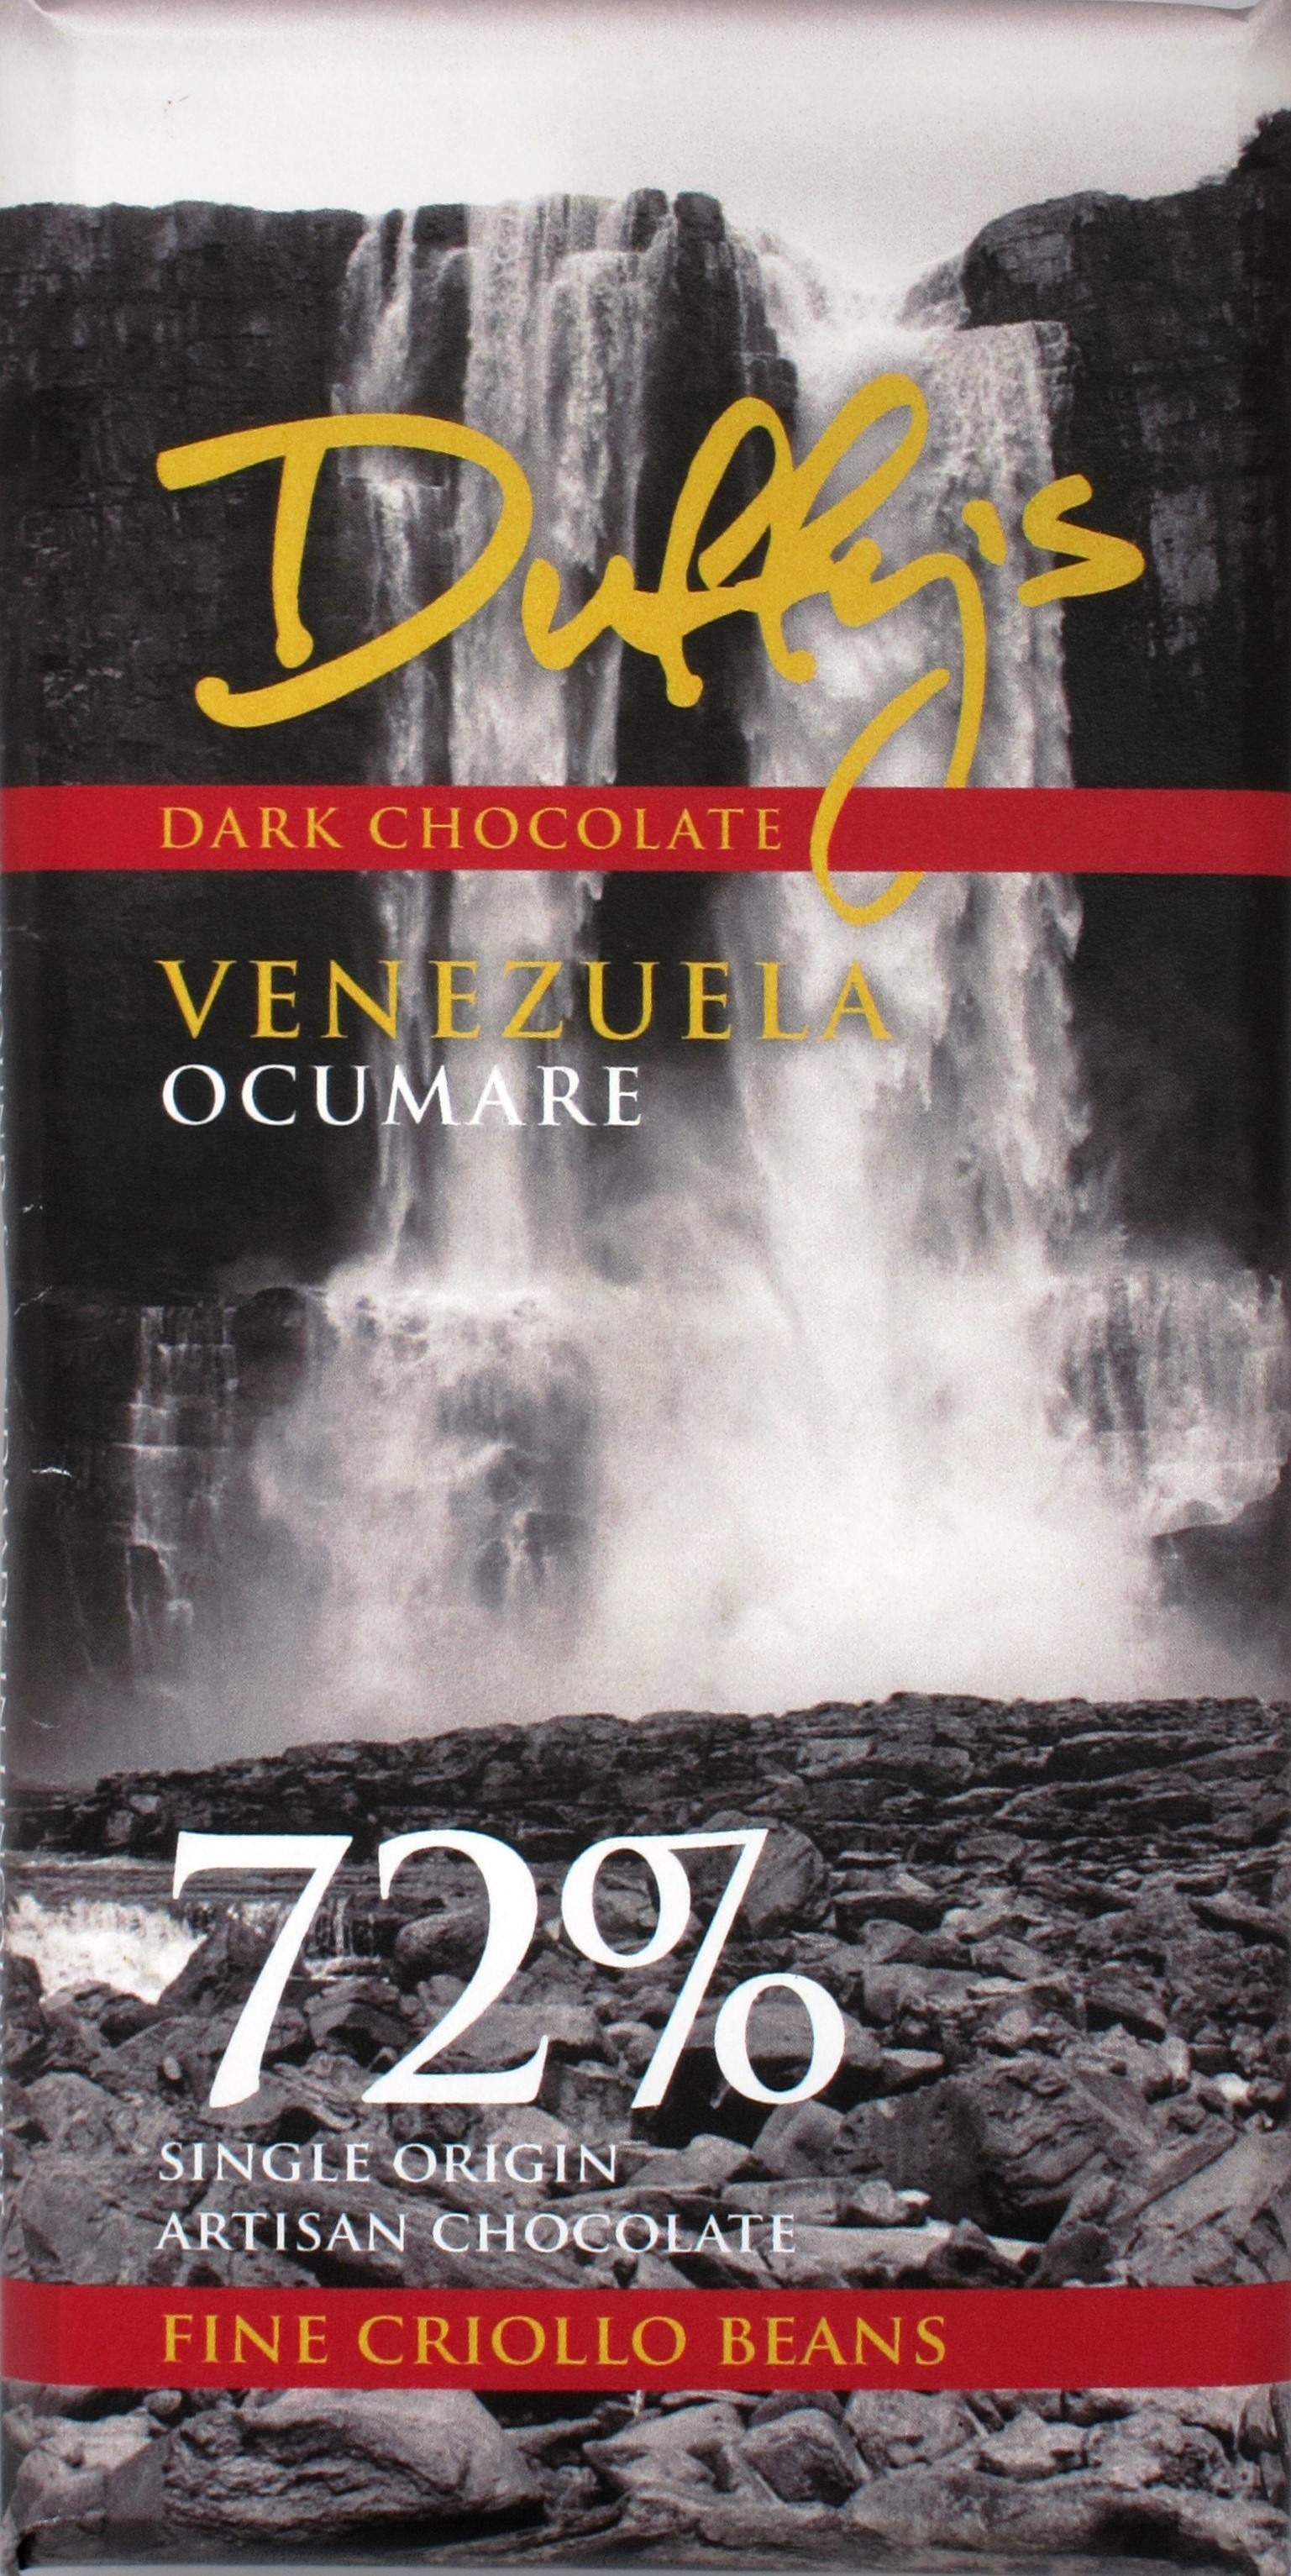 Tafel, Duffy's Venezuela Ocumare, 72%